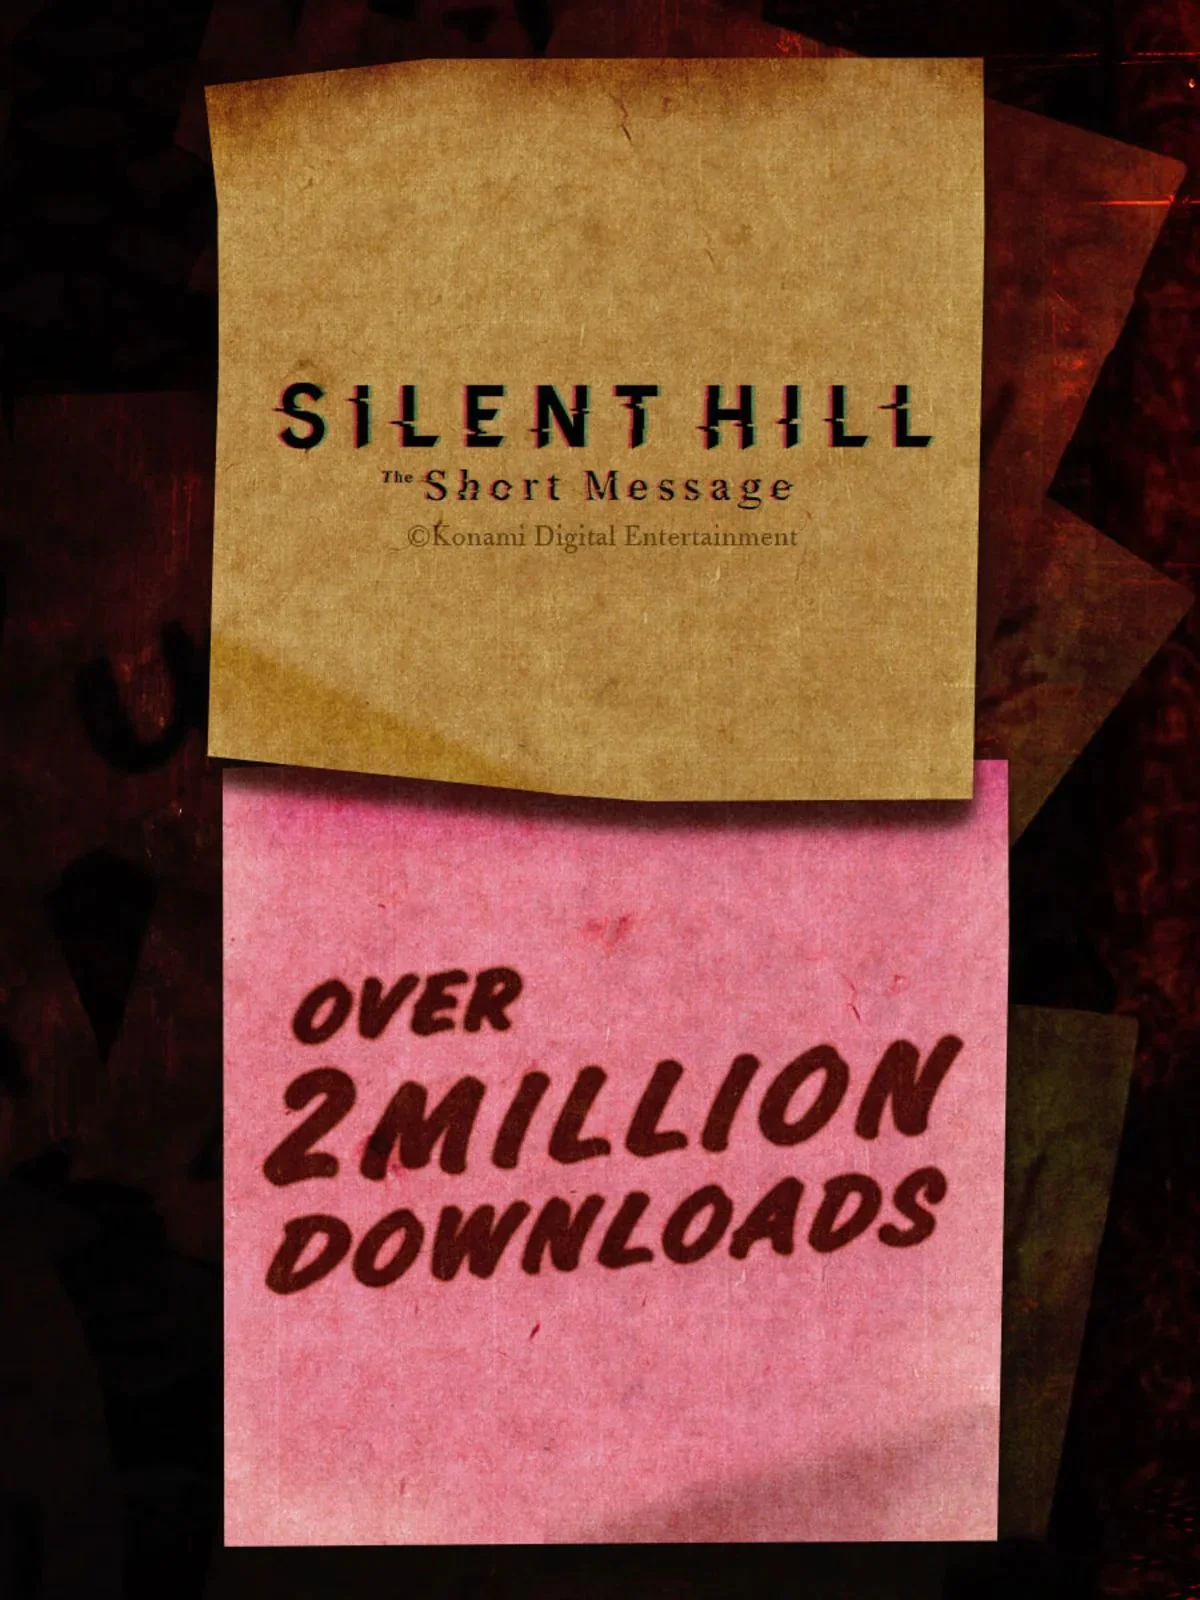 Бесплатную Silent Hill The Short Message скачали более 2 млн раз - фото 1